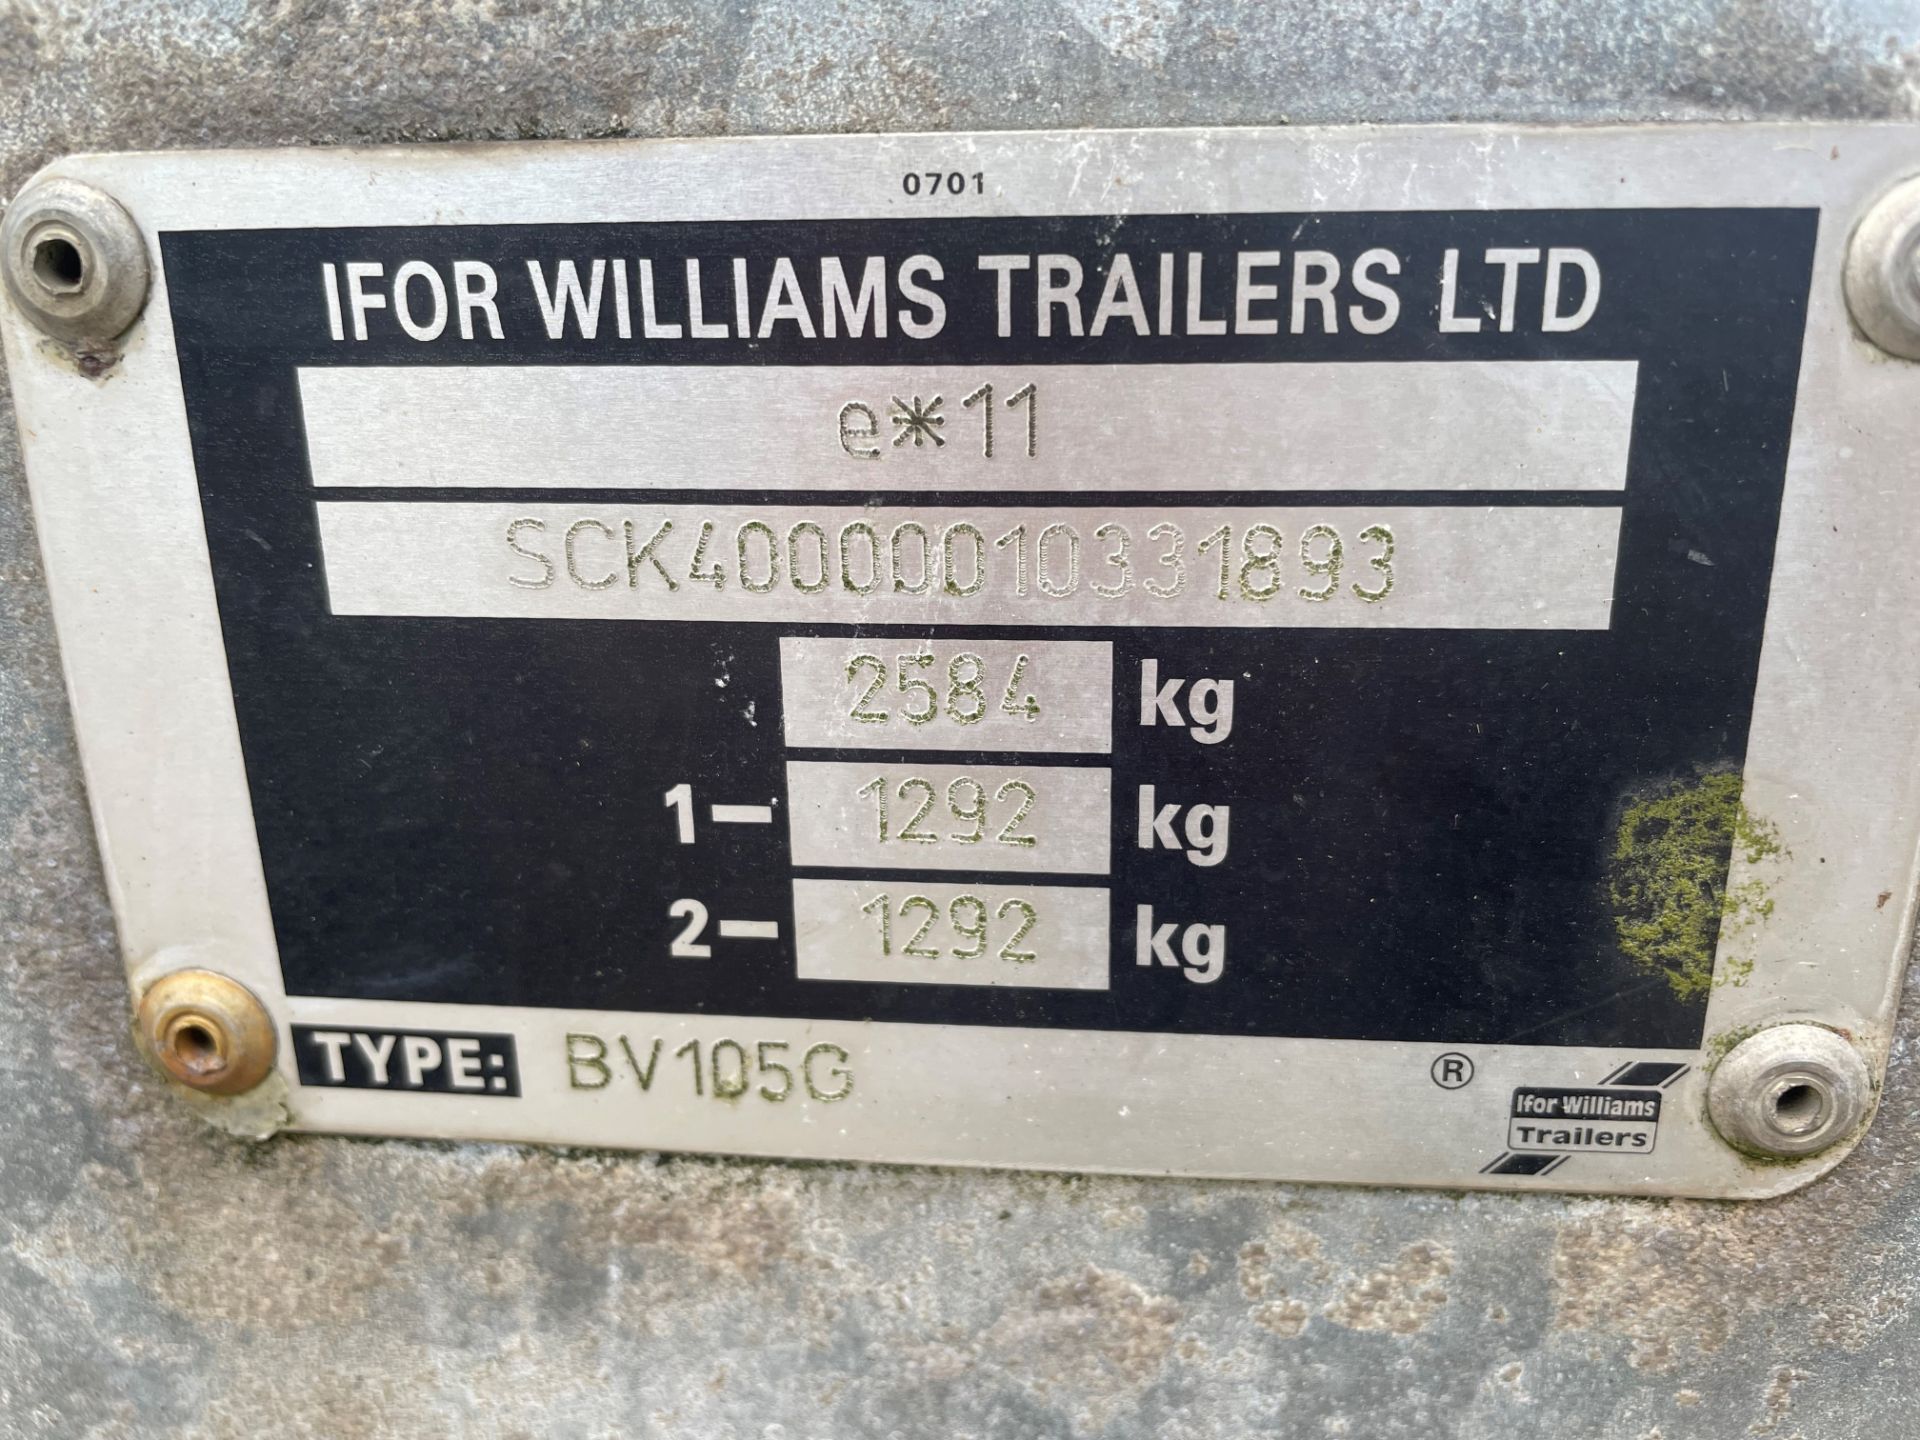 Ifor Williams E*11 twin axle enclosed box trailer - trailer dimensions: 460x200x230cm - Image 10 of 10